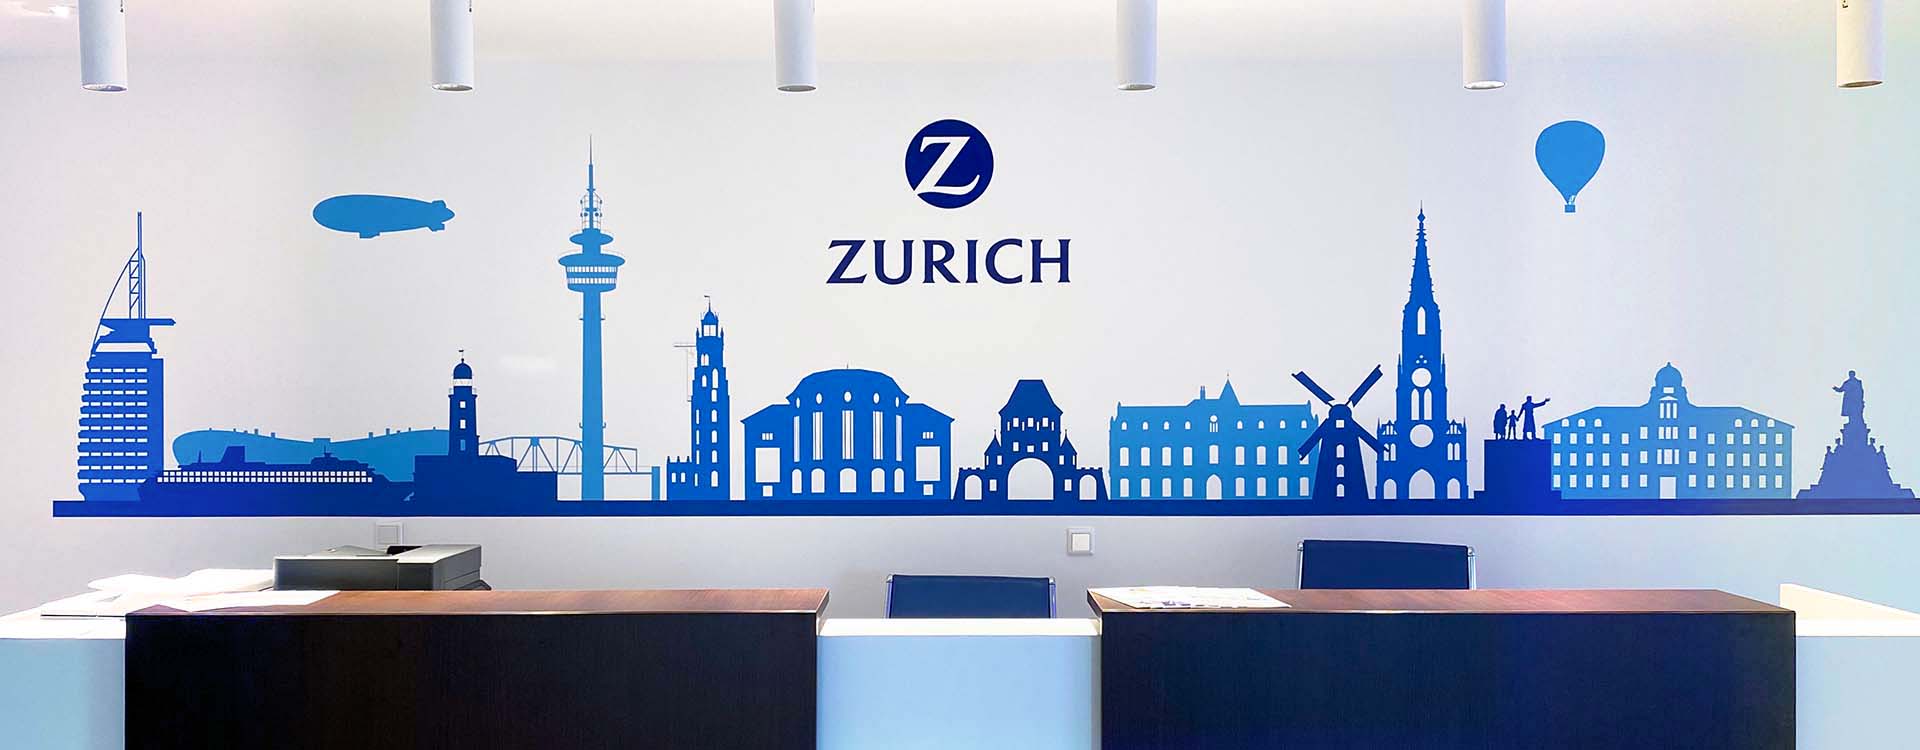 Büro Wandbild: Foyer der Zürich Versicherung.